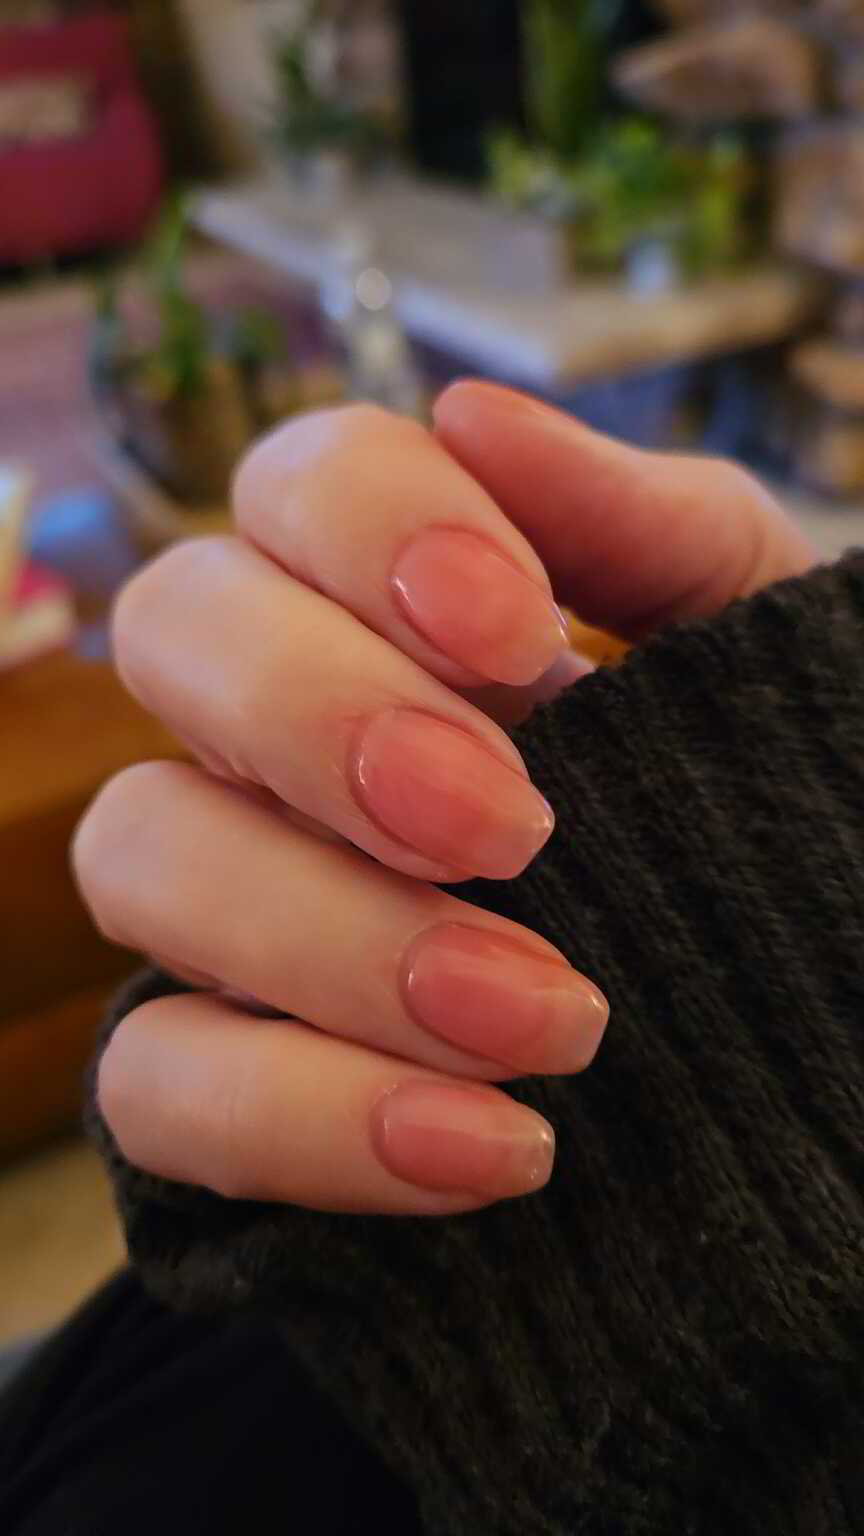 Nail polish manicure of shade Revel Luci